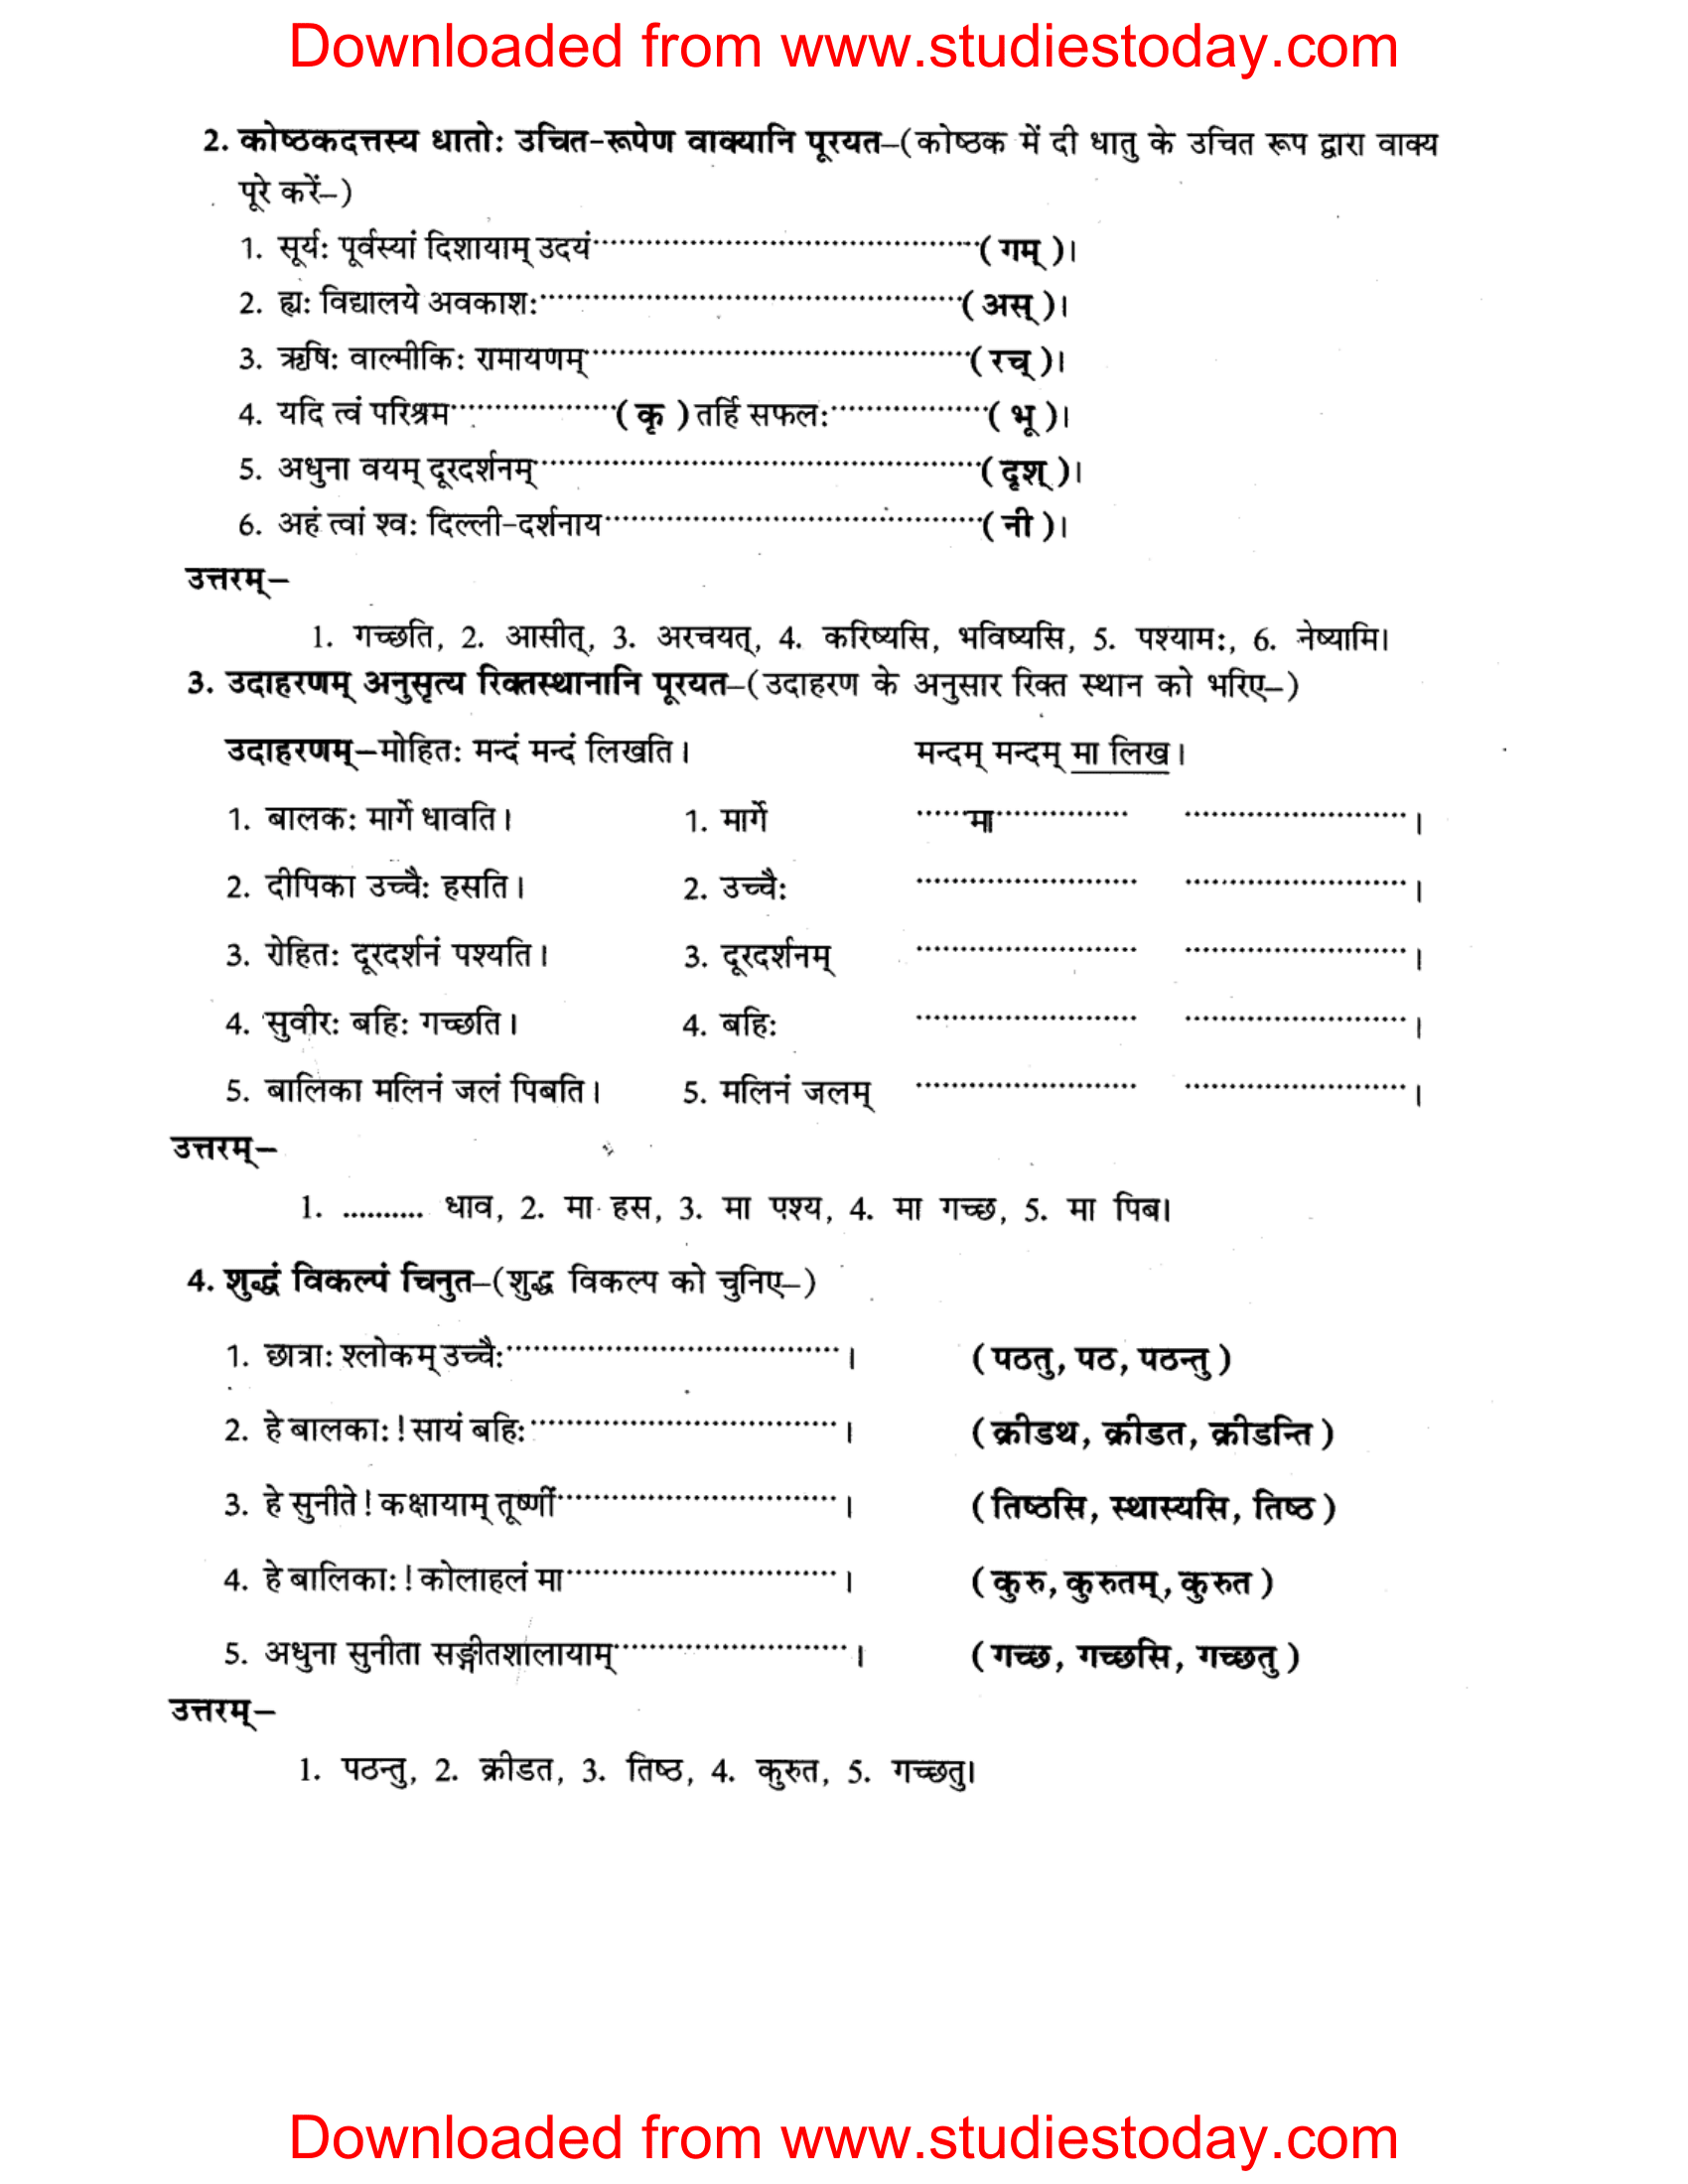 ncert-solutions-class-8-sanskrit-chapter-6-kriyapadani-tatha-dhatrupani-2